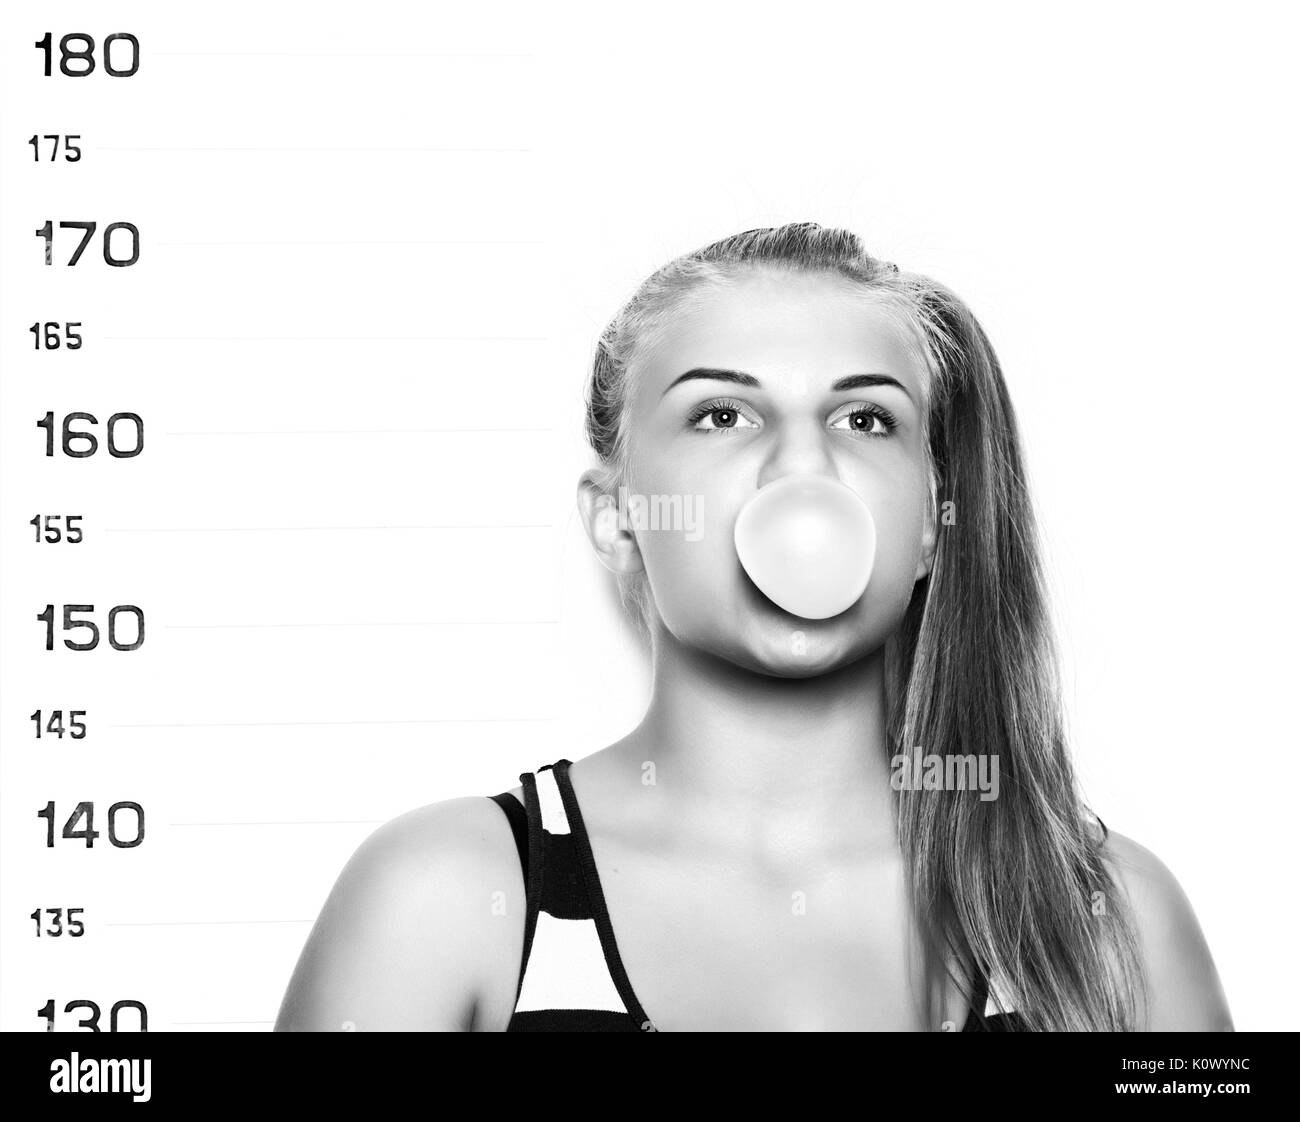 Belle jeune femme blonde et faire des bulles de chewing-gum des photos d'identité criminelle Banque D'Images